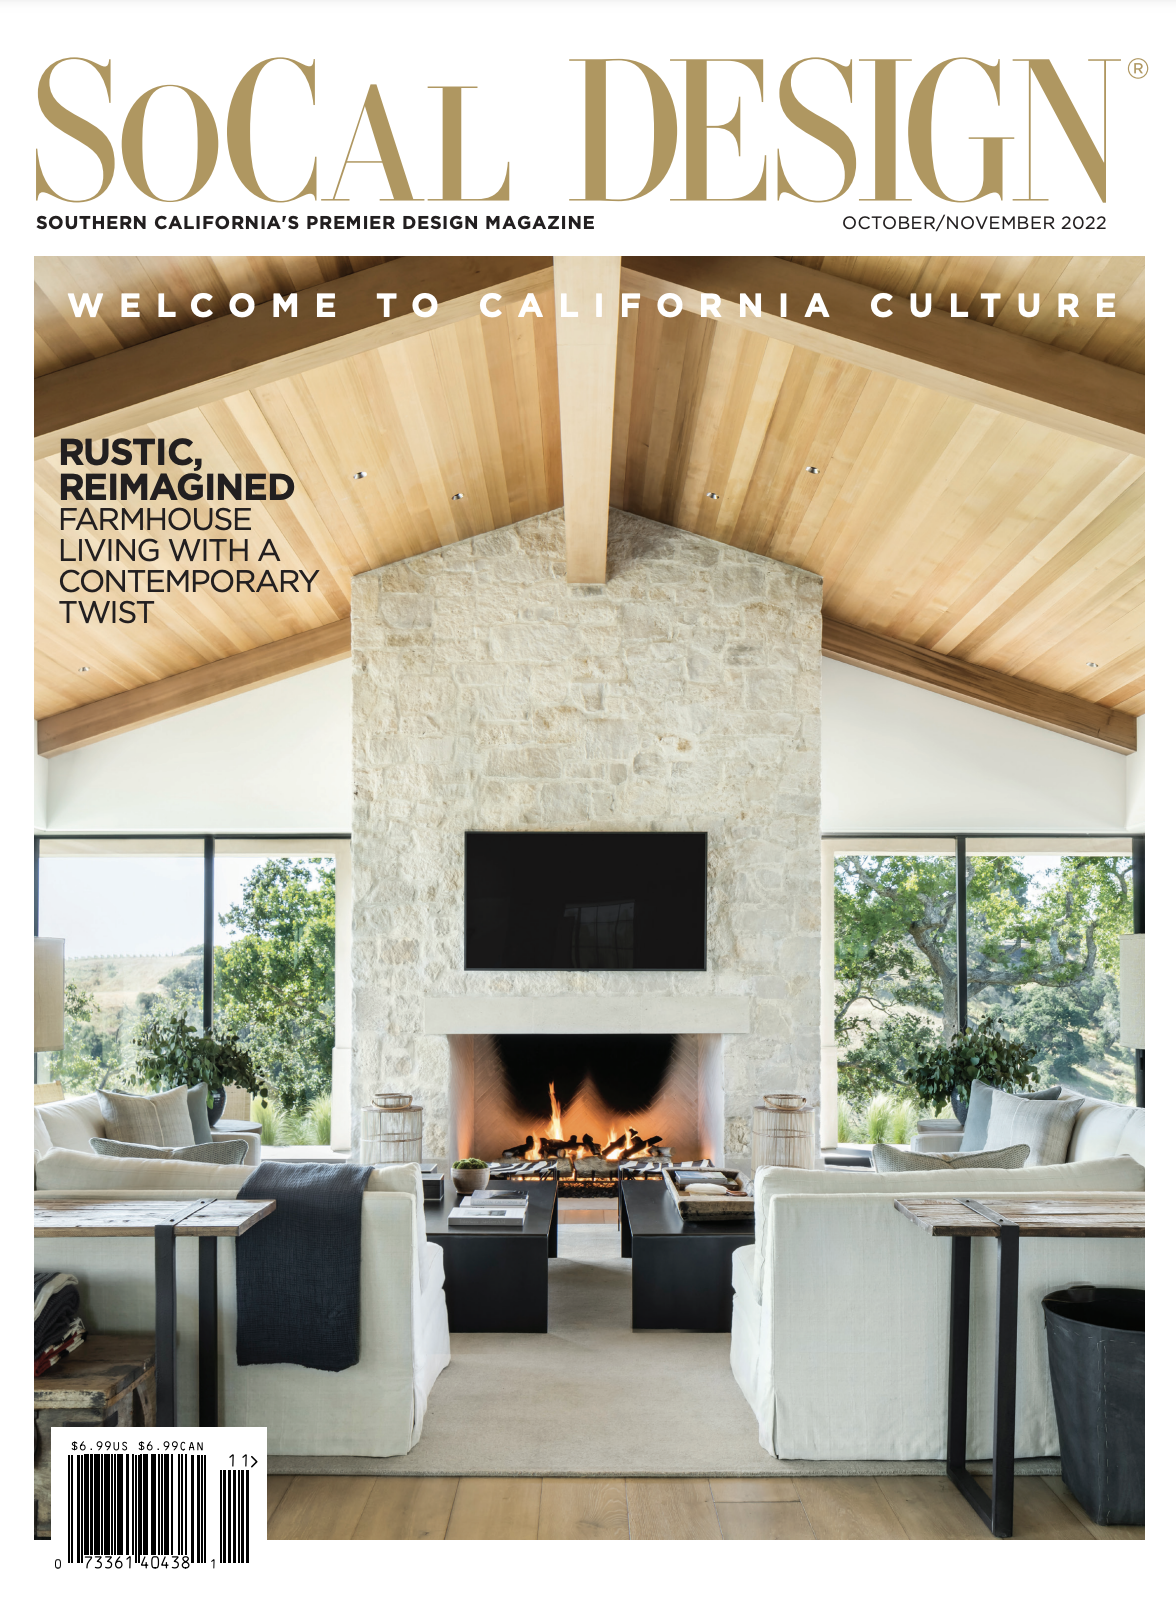 Flooring News - So Cal Design Magazine Oct-Nov 2022 Cover